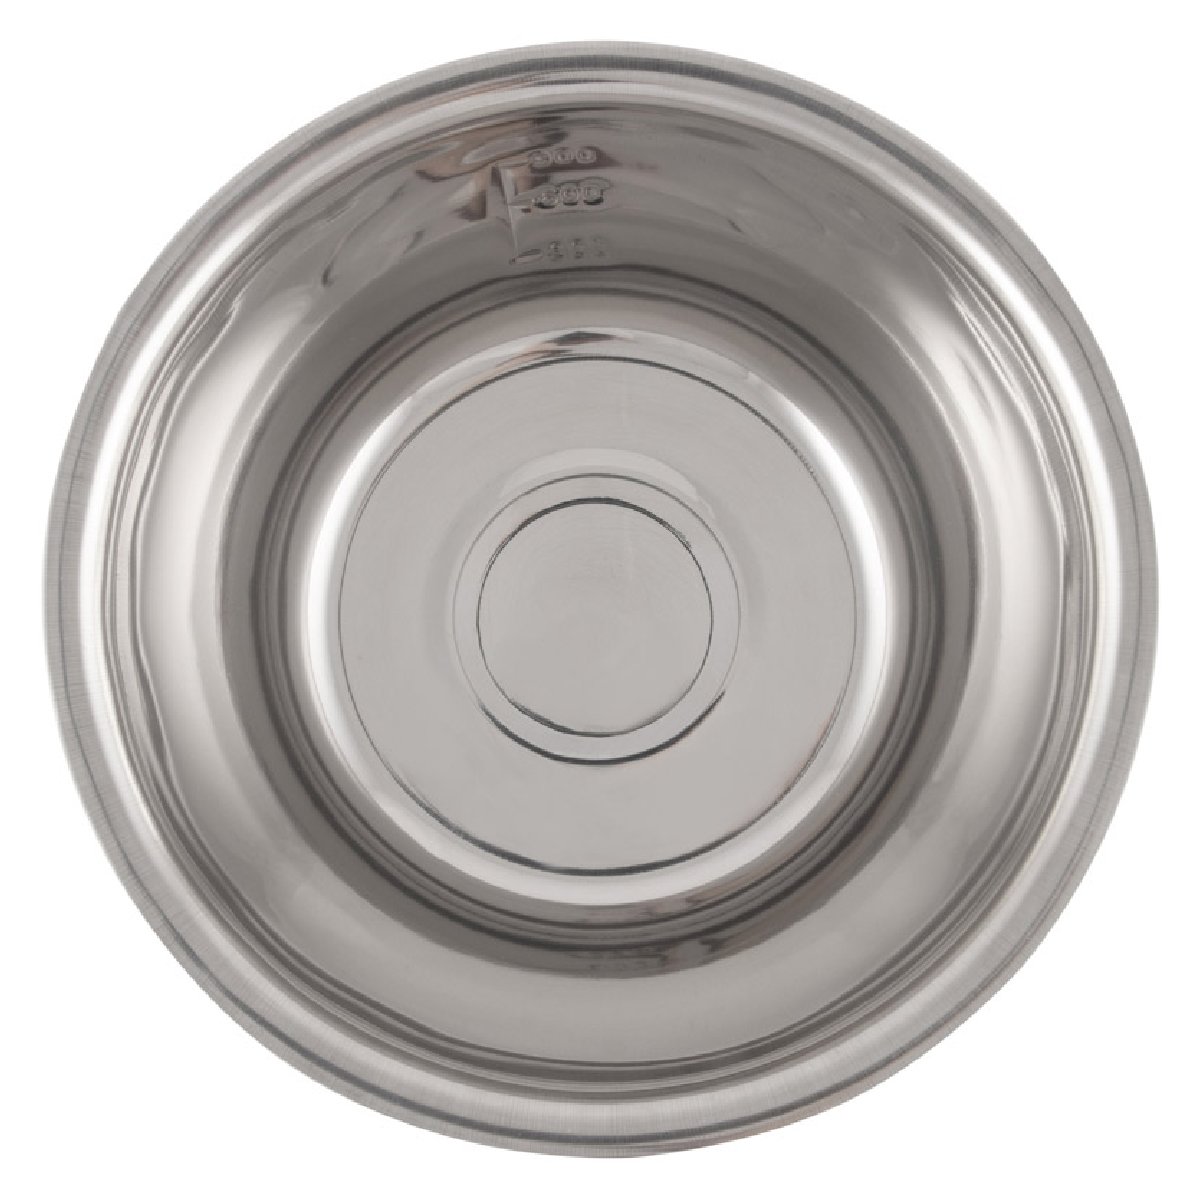 Миска Bowl-Roll-20, объем 1,5 л, из нержавеющей стали, зеркальная полировка, диаметр 20 см (003277)